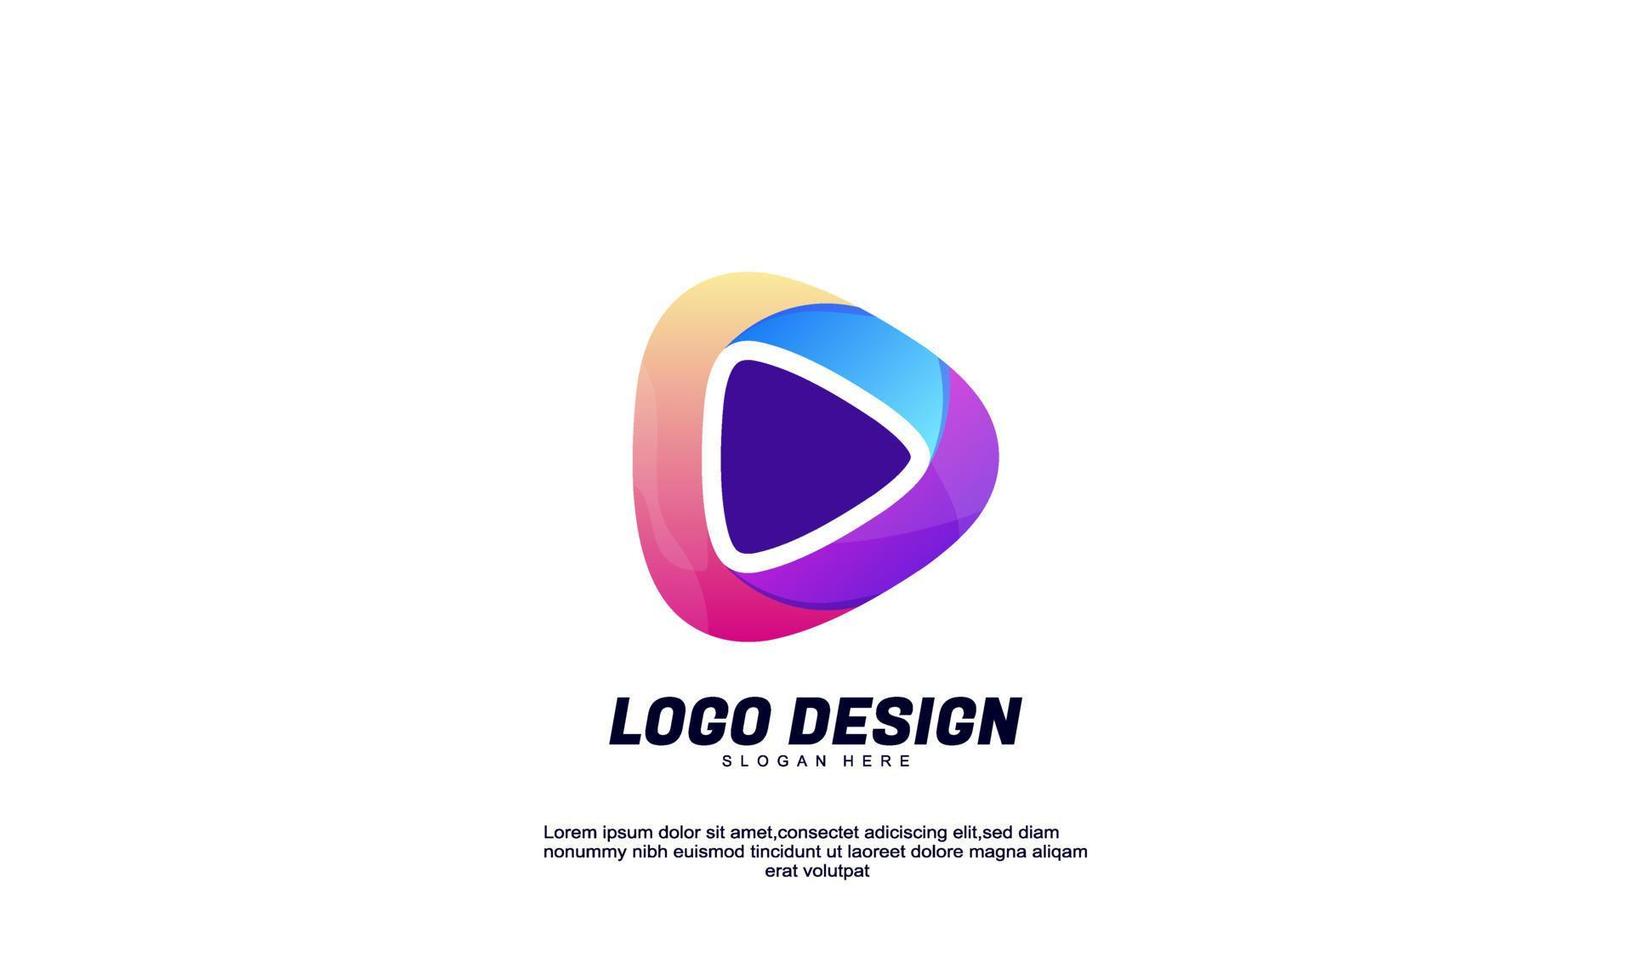 Lager Vektor abstrakte kreative Wirtschaft Unternehmen Produktivität Dreieck Logo Farbverlauf Design-Vorlage